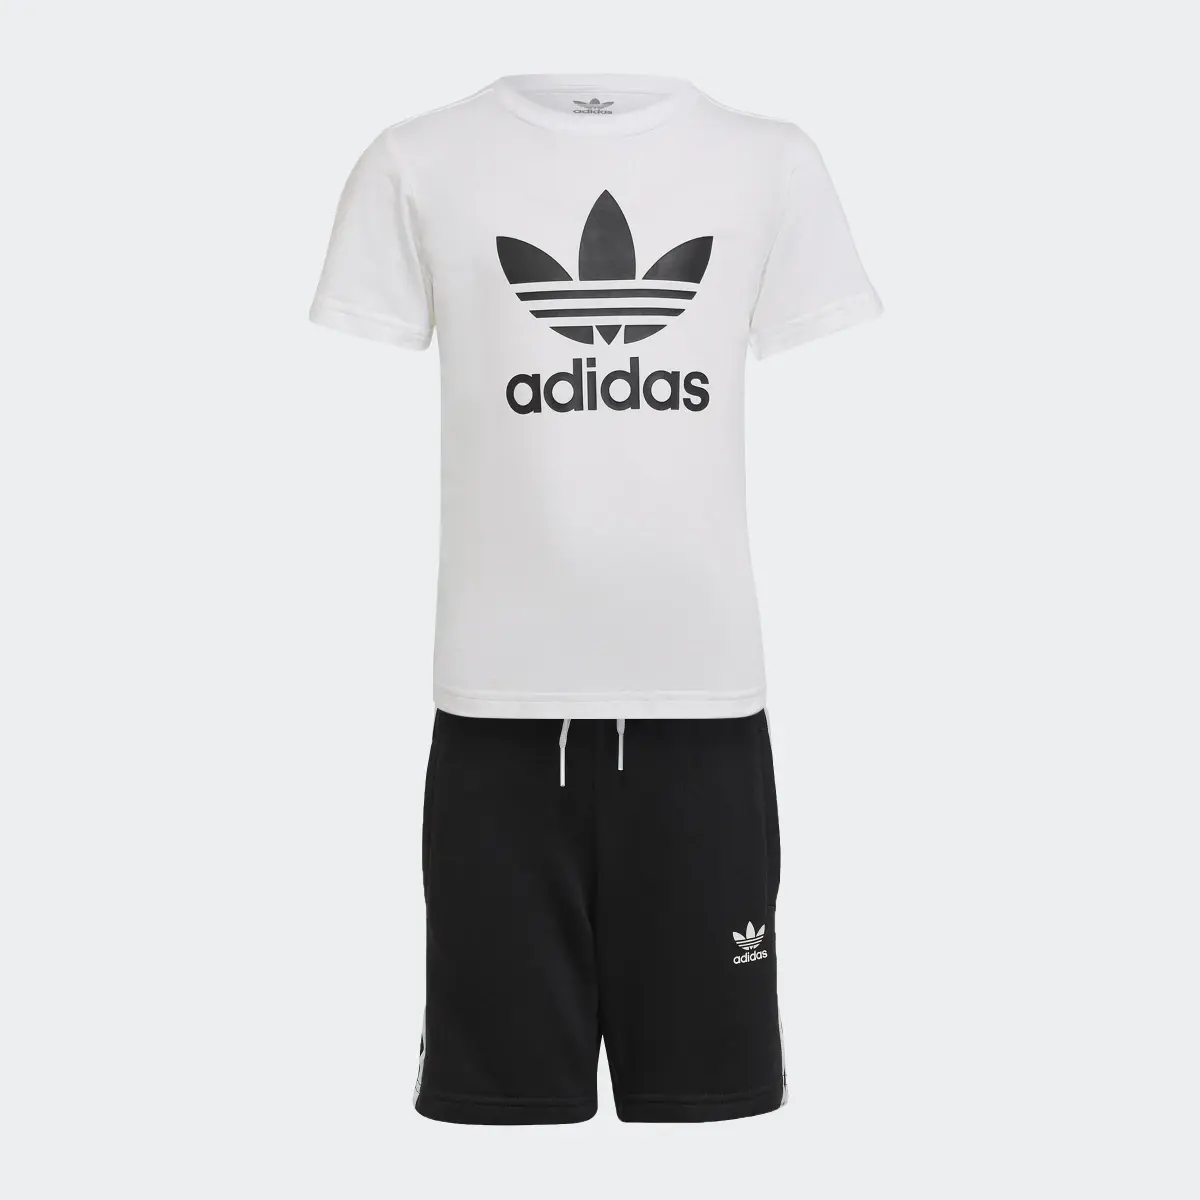 Adidas Adicolor Şort ve Tişört Takımı. 1